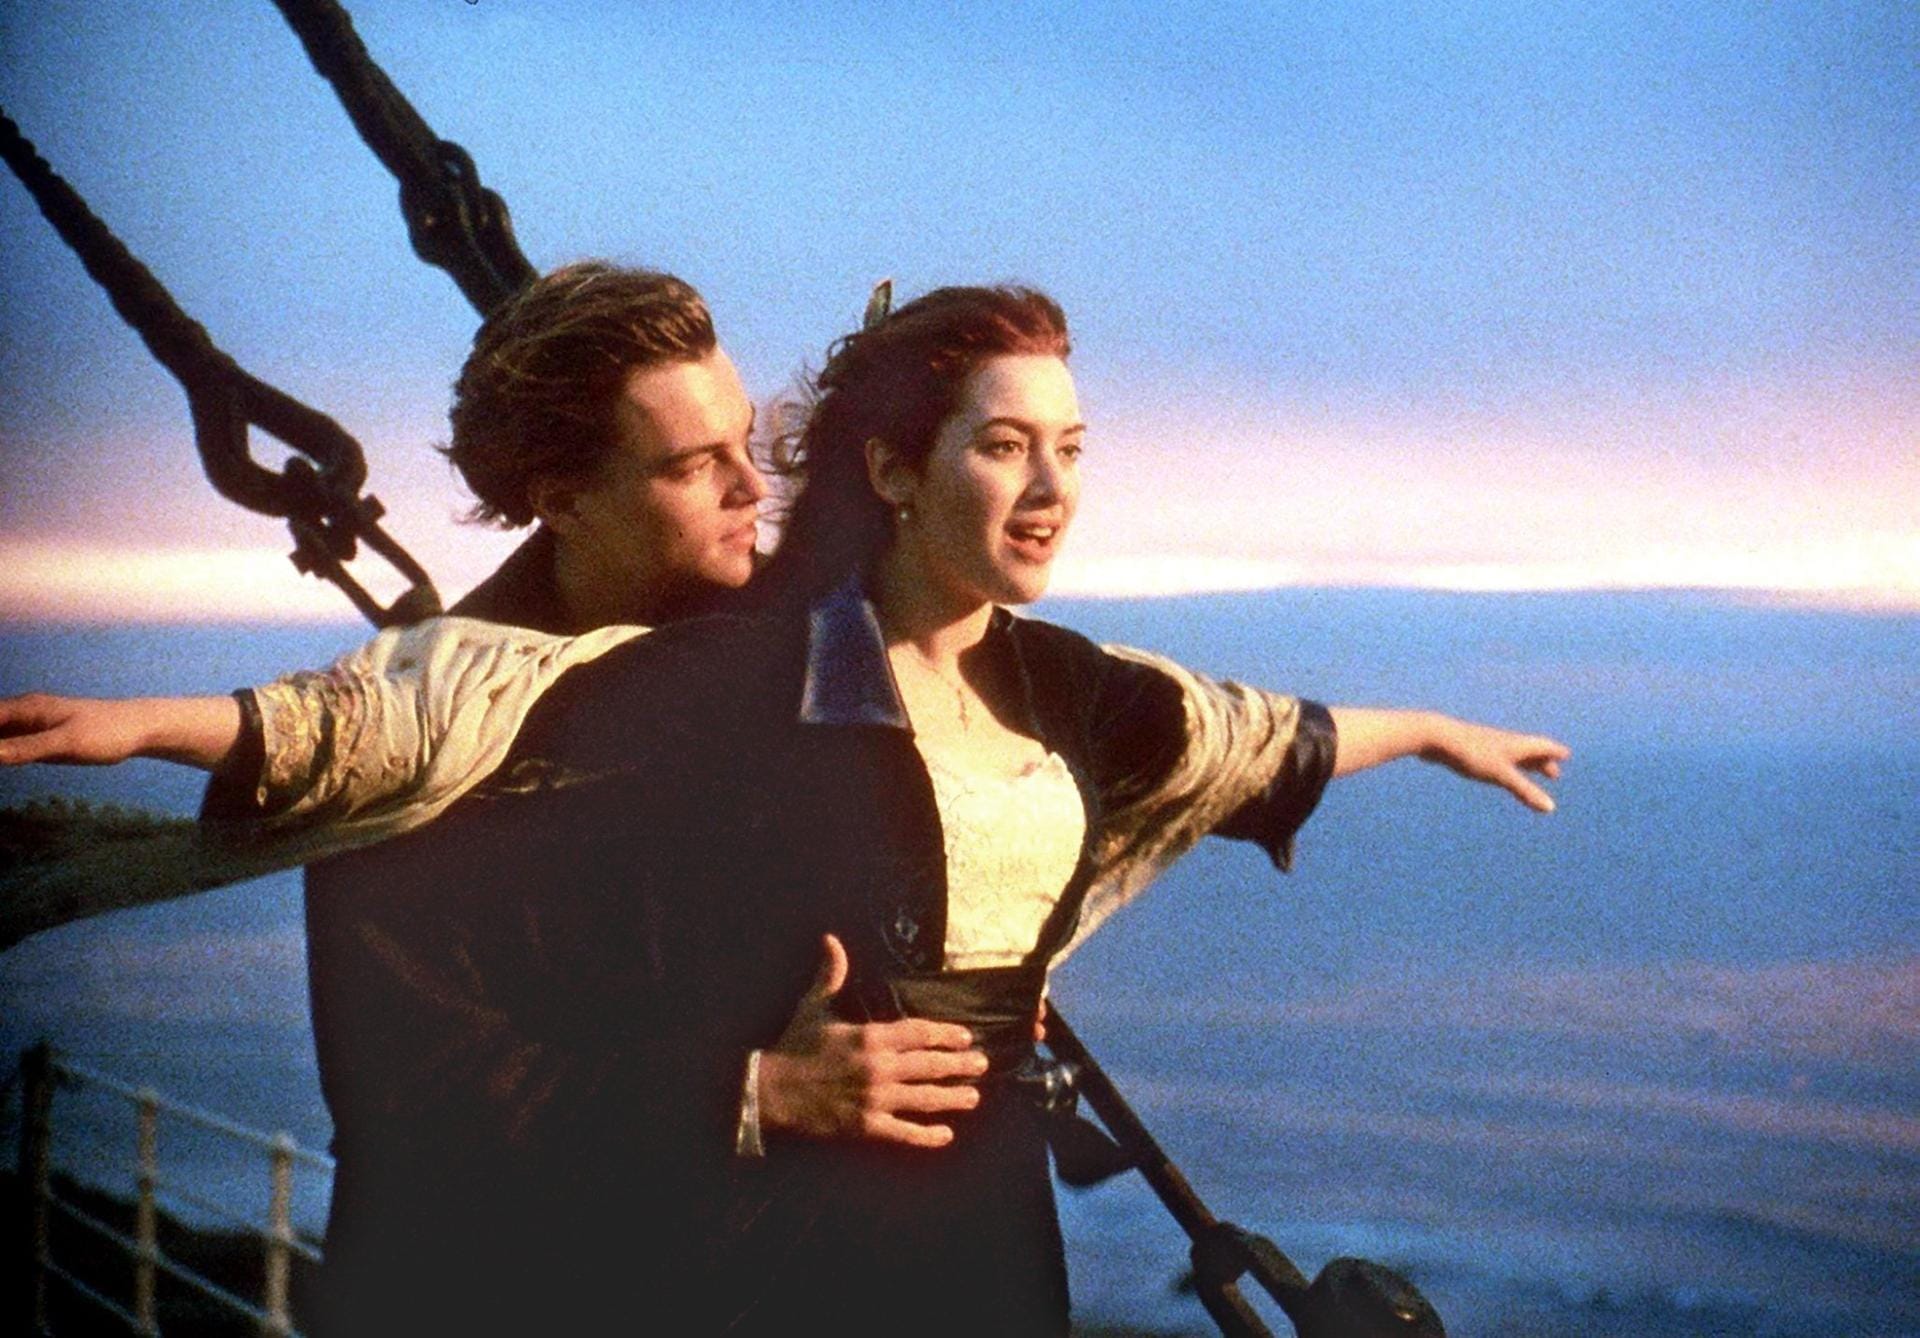 Noch bevor die Titanic untergeht, fragte Jack Dawson (Leonardo DiCaprio) seine Rose (Kate Winslet) einmal: "Wohin Miss?" Darauf sie: "Zu den Sternen!" Eine wirklich schöne Art, dem Partner seine Gefühle darzulegen. Es kommt eben nur auf die richtigen Worte und die dazugehörigen Blicke an.